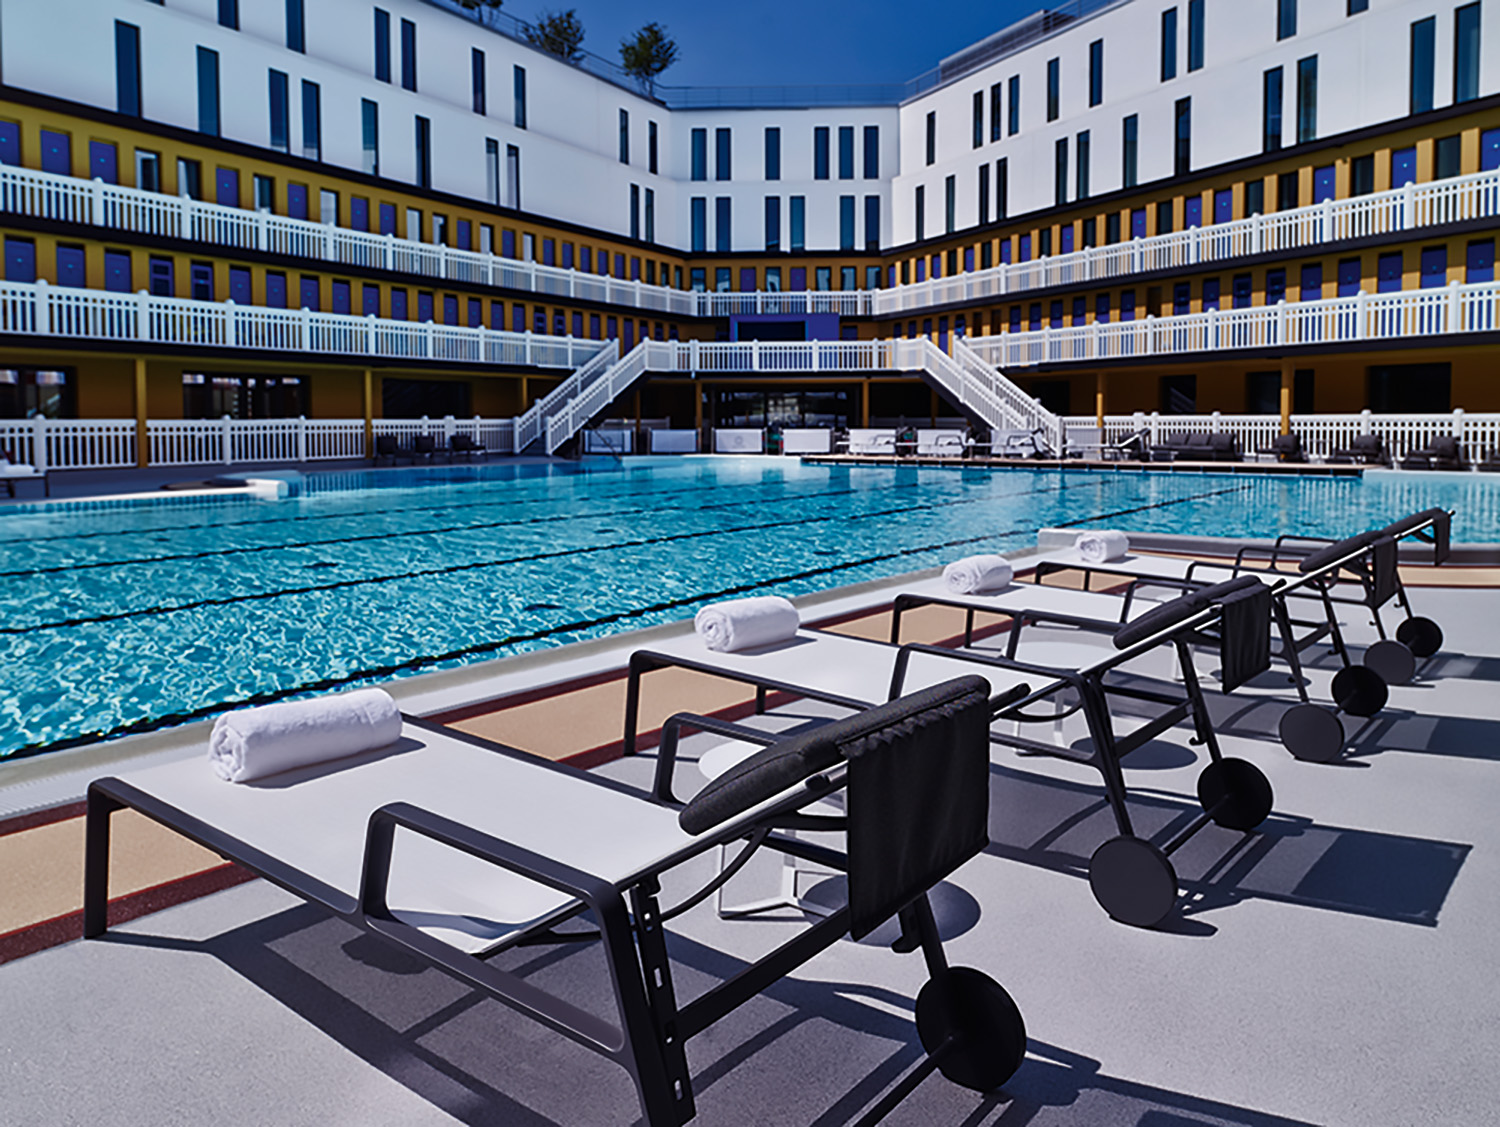 terrasse de la piscine de l'hotel molitor , hôtellerie lifestyle, paris 16ème, intérieur de luxe, hotel 5 étoiles, architecture d'intérieur, studio jean-philippe nuel,